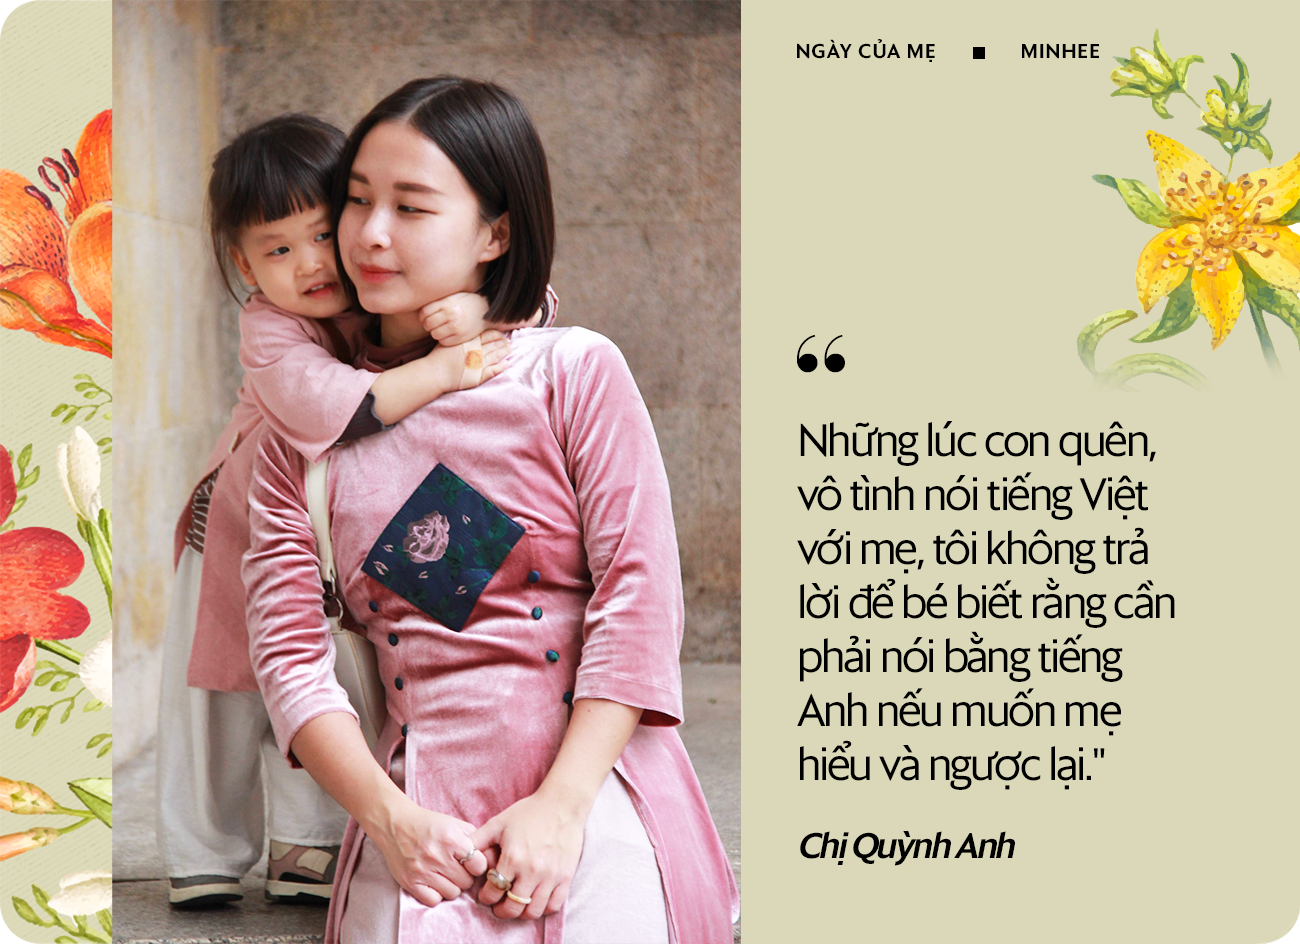 Dạy song ngữ cho con từ thuở lọt lòng, bé gái Việt 3 tuổi được tiếp xúc với 4 ngôn ngữ: Mong sau này lớn lên, MinHee sẽ thật “Minh Hy” - thông minh, tích cực và luôn hy vọng những điều tốt đẹp - Ảnh 7.